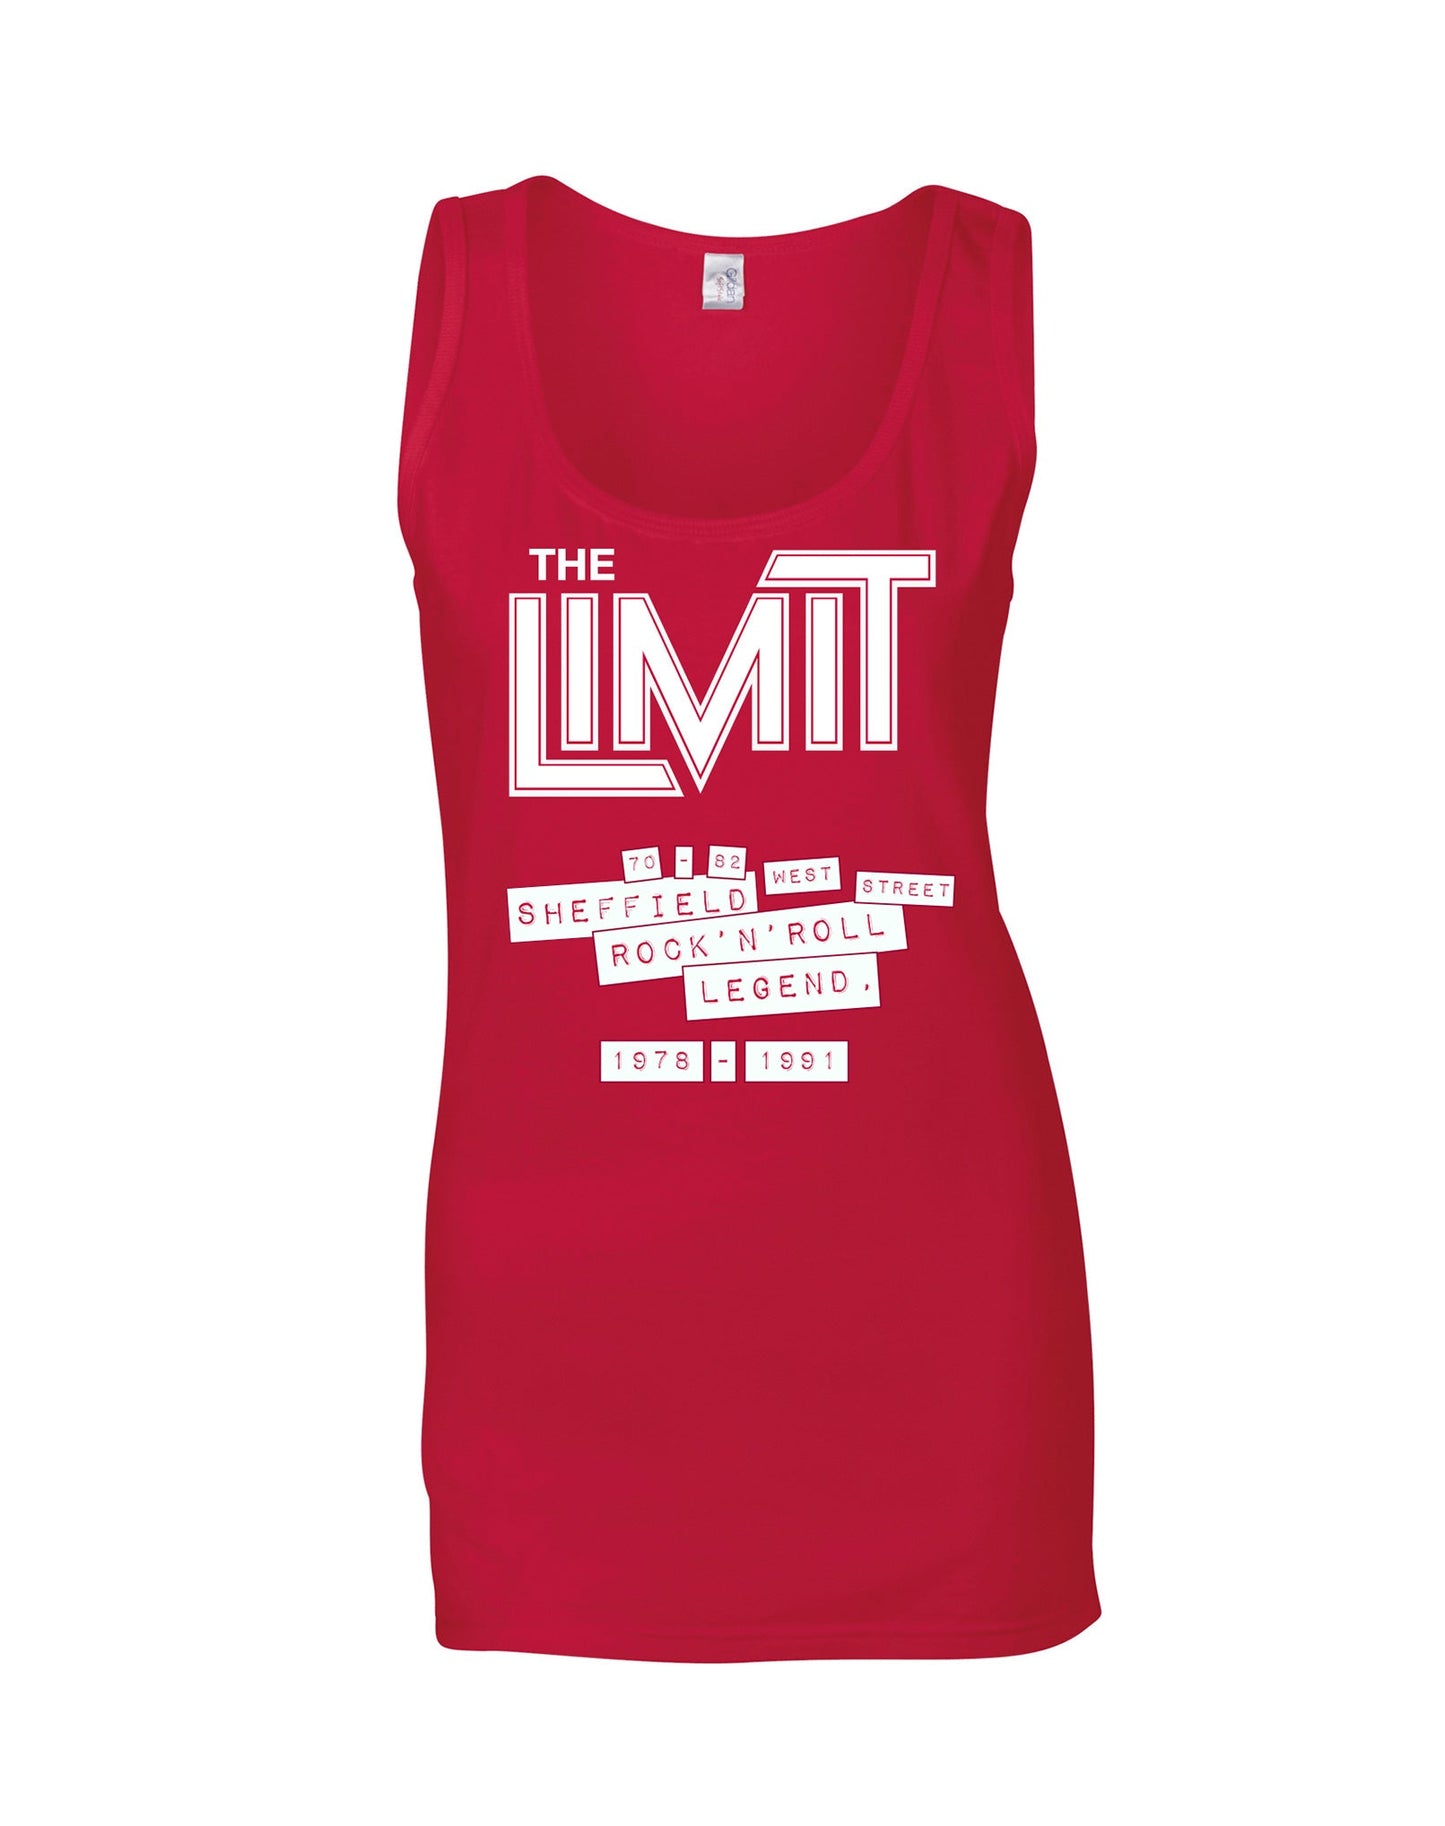 The Limit ladies fit vest - various colours - Dirty Stop Outs